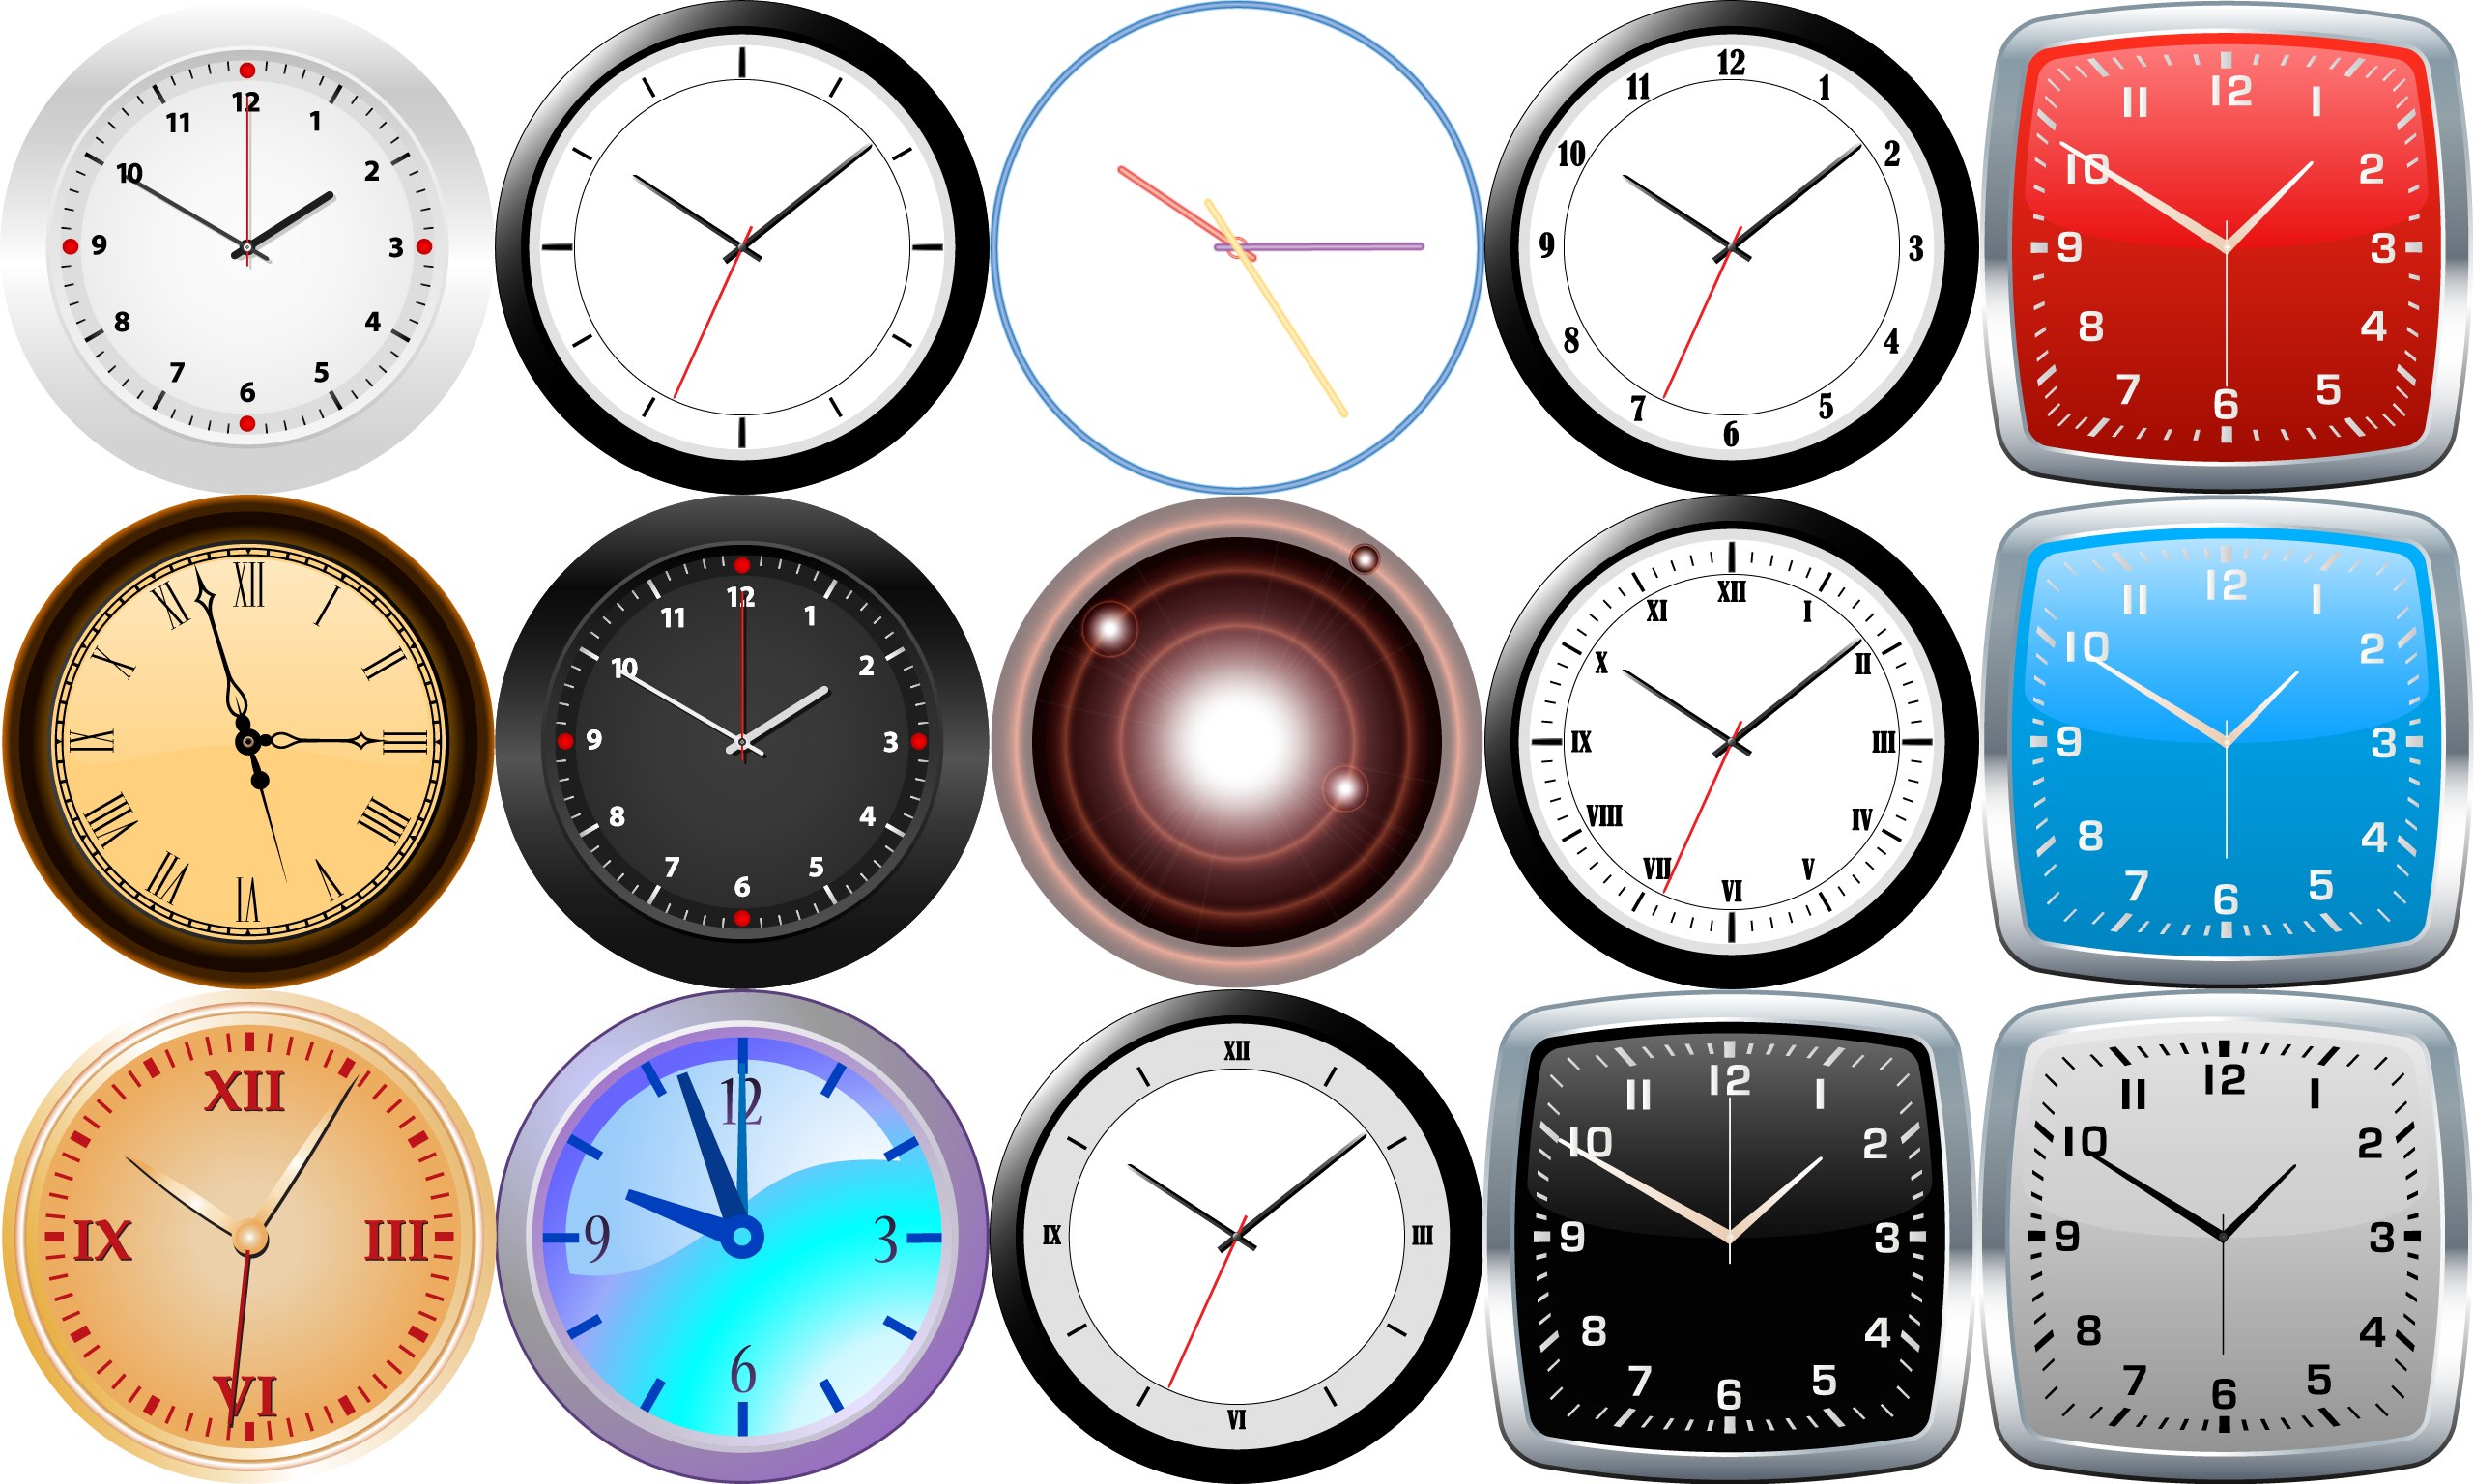 デスクトップ上に常駐してくれる15種類のデザインのアナログ時計アプリ Deepclock が無料セール中 pl Ch